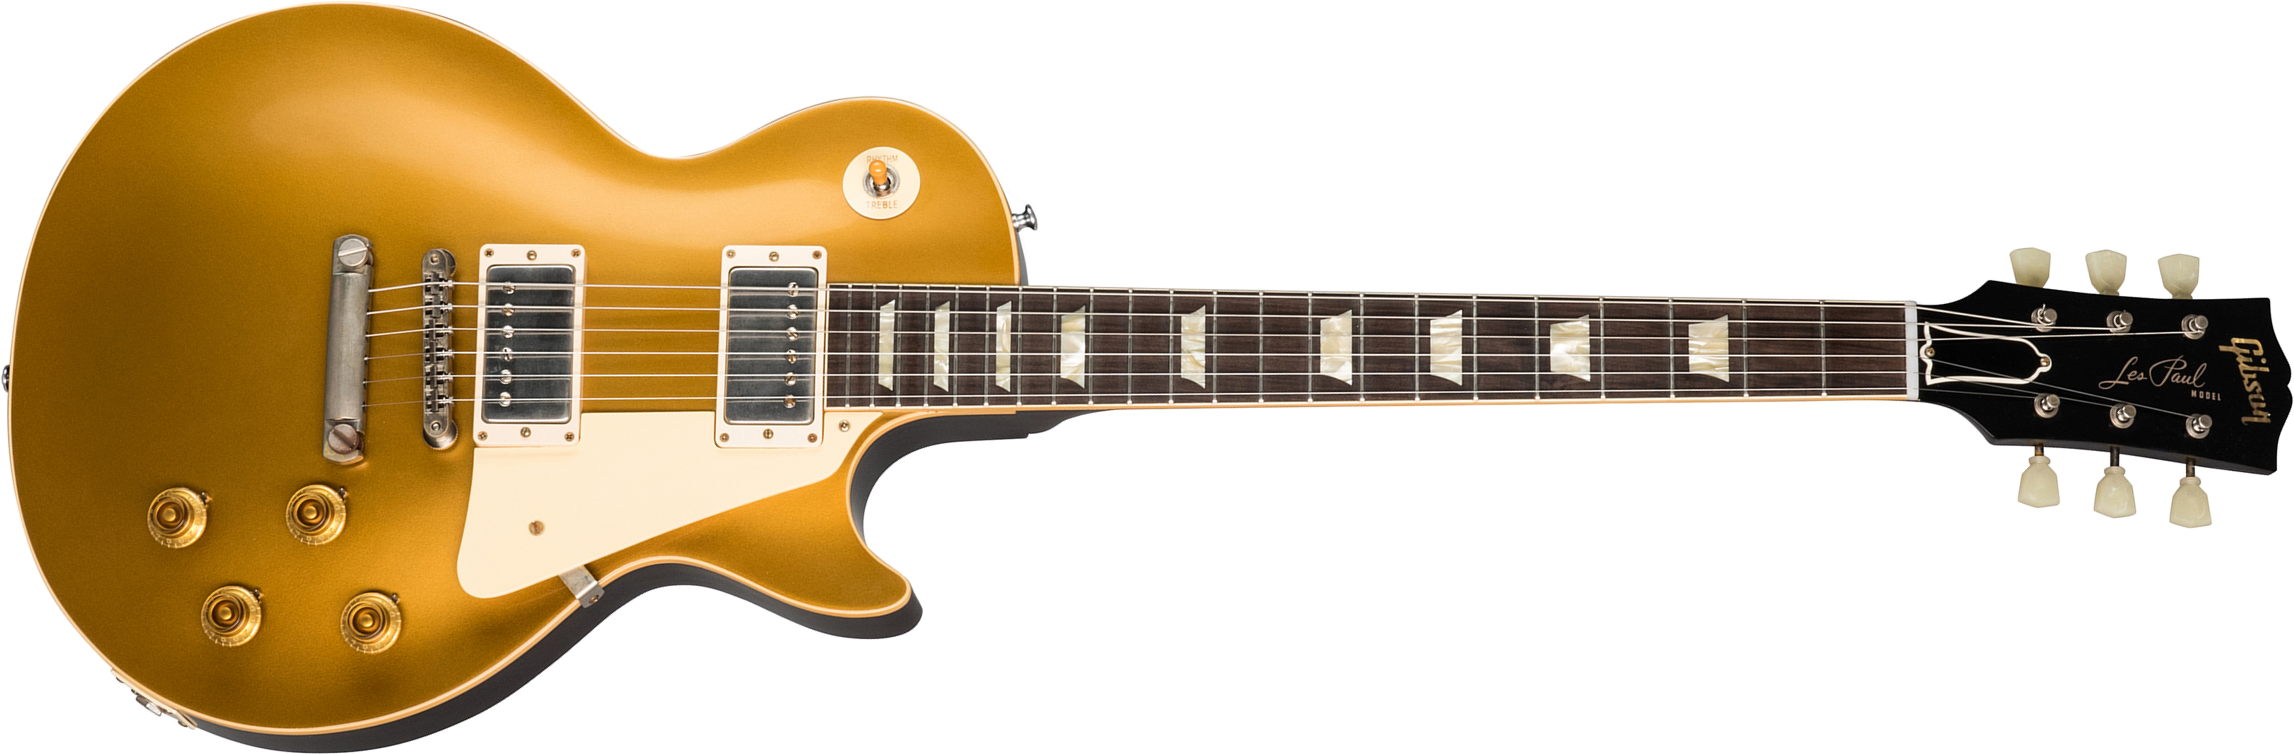 Gibson Custom Shop Les Paul Goldtop 1957 Reissue 2019 2h Ht Rw - Vos Double Gold With Dark Back - Guitarra eléctrica de corte único. - Main picture